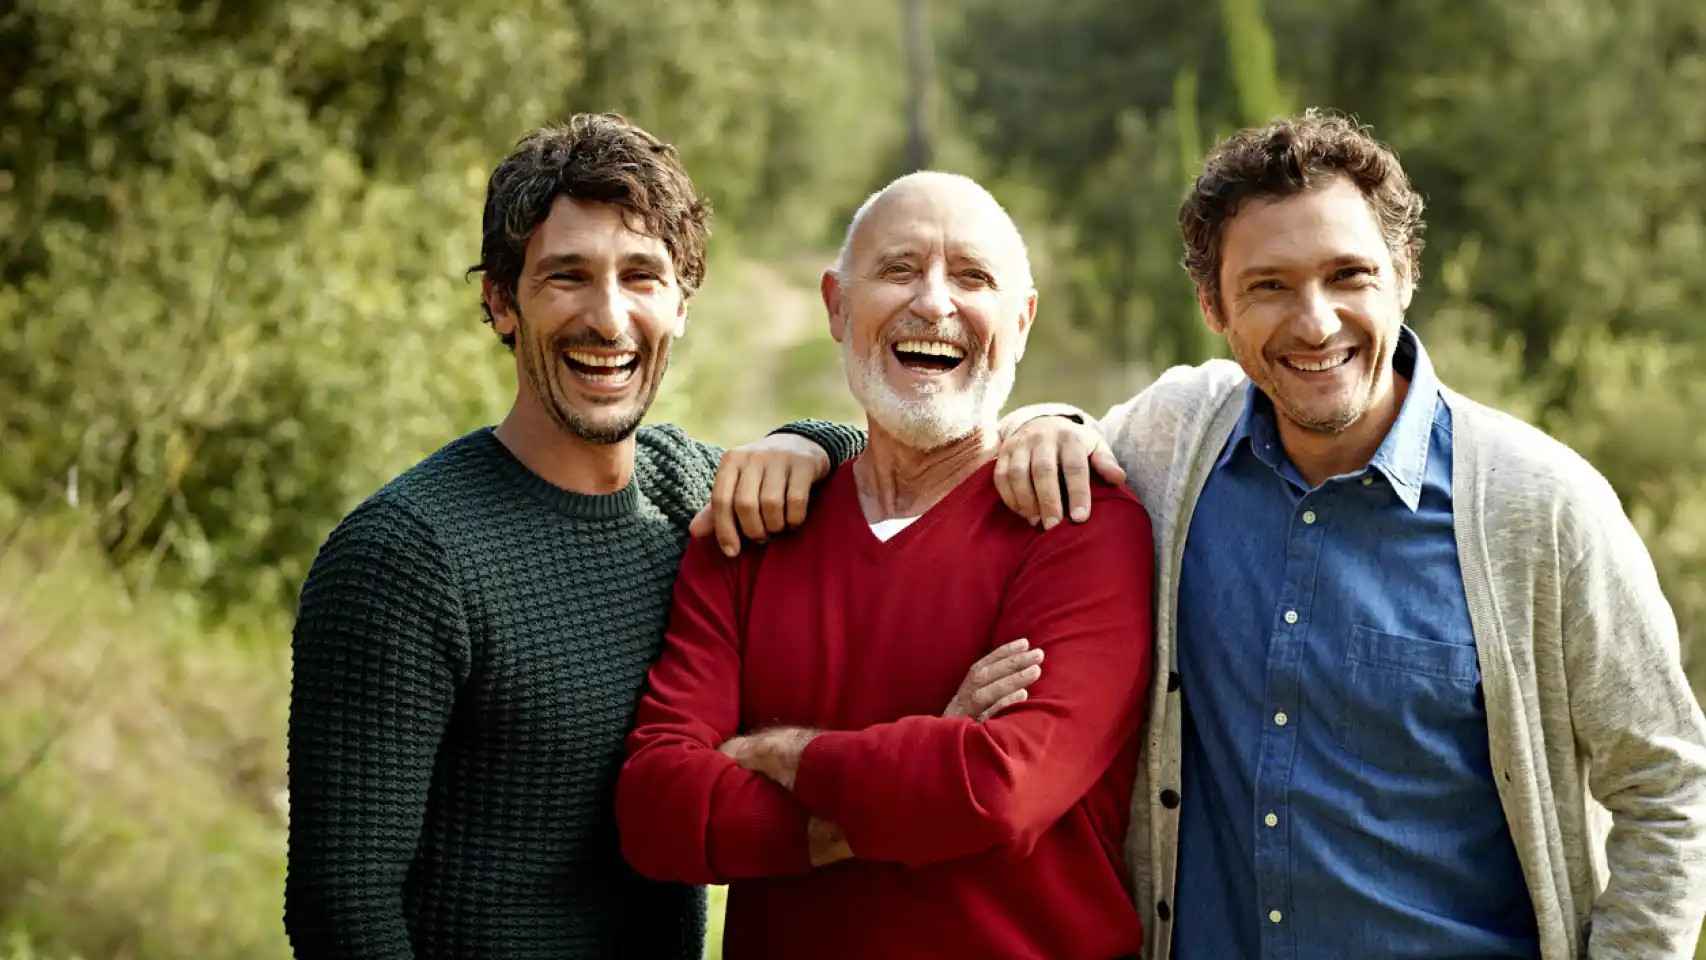 Imagen de archivo de tres hombres sonriendo.